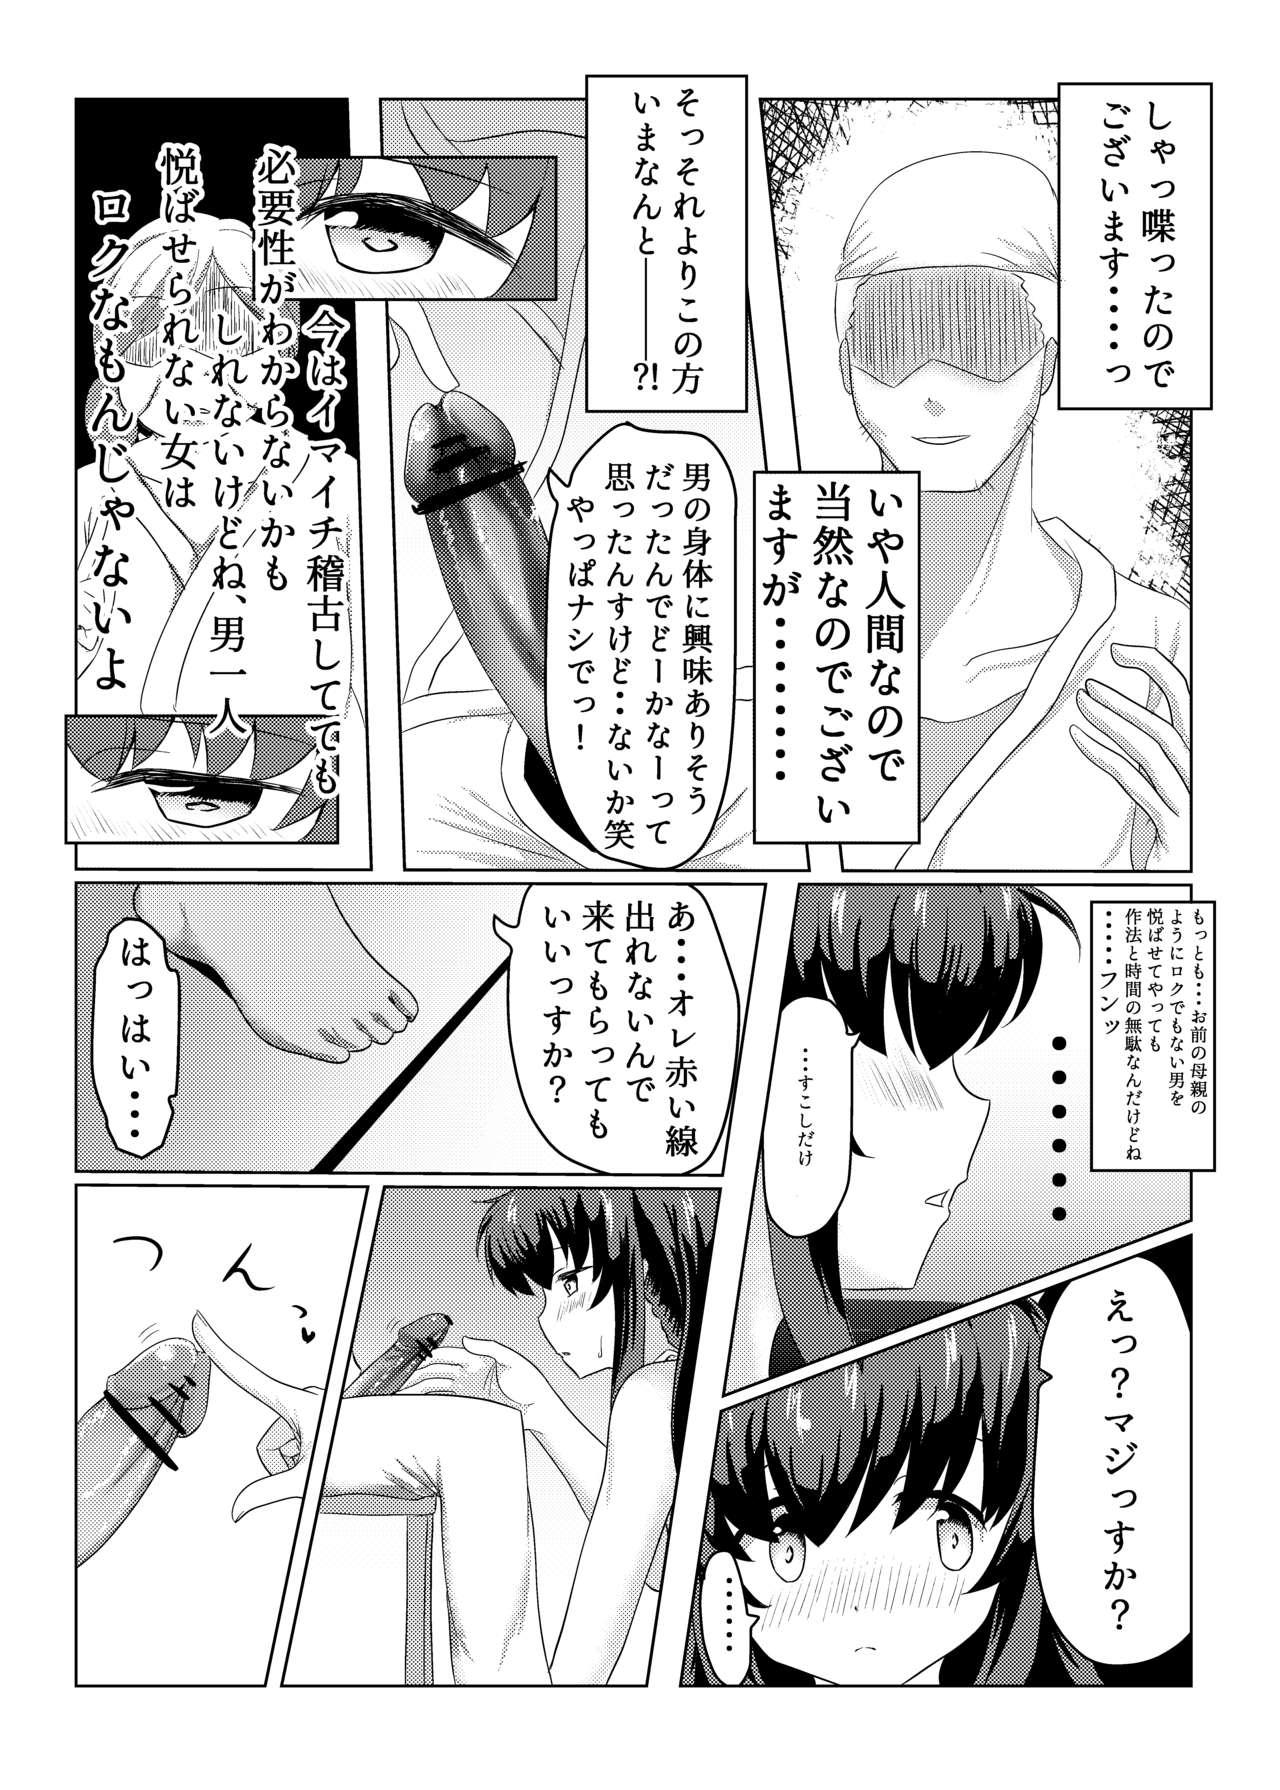 Dorm Tsukuyo ga Waruinodegozaimasu - Puella magi madoka magica side story magia record Casal - Page 9